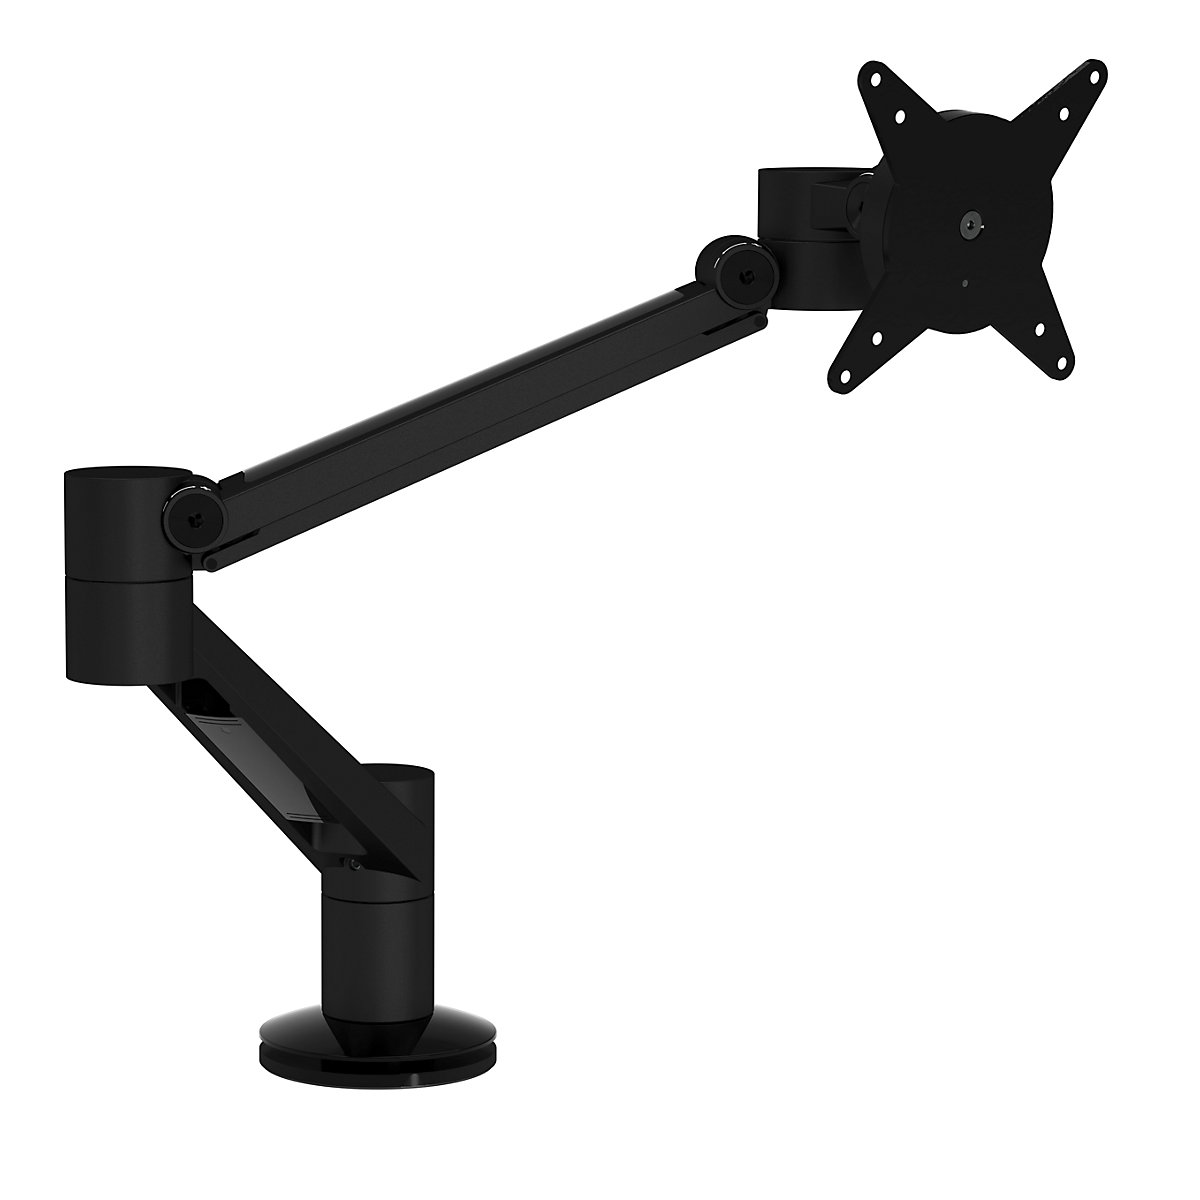 VIEWLITE PLUS monitortartó kar – Dataflex, asztalra rögzítéshez, fekete-7